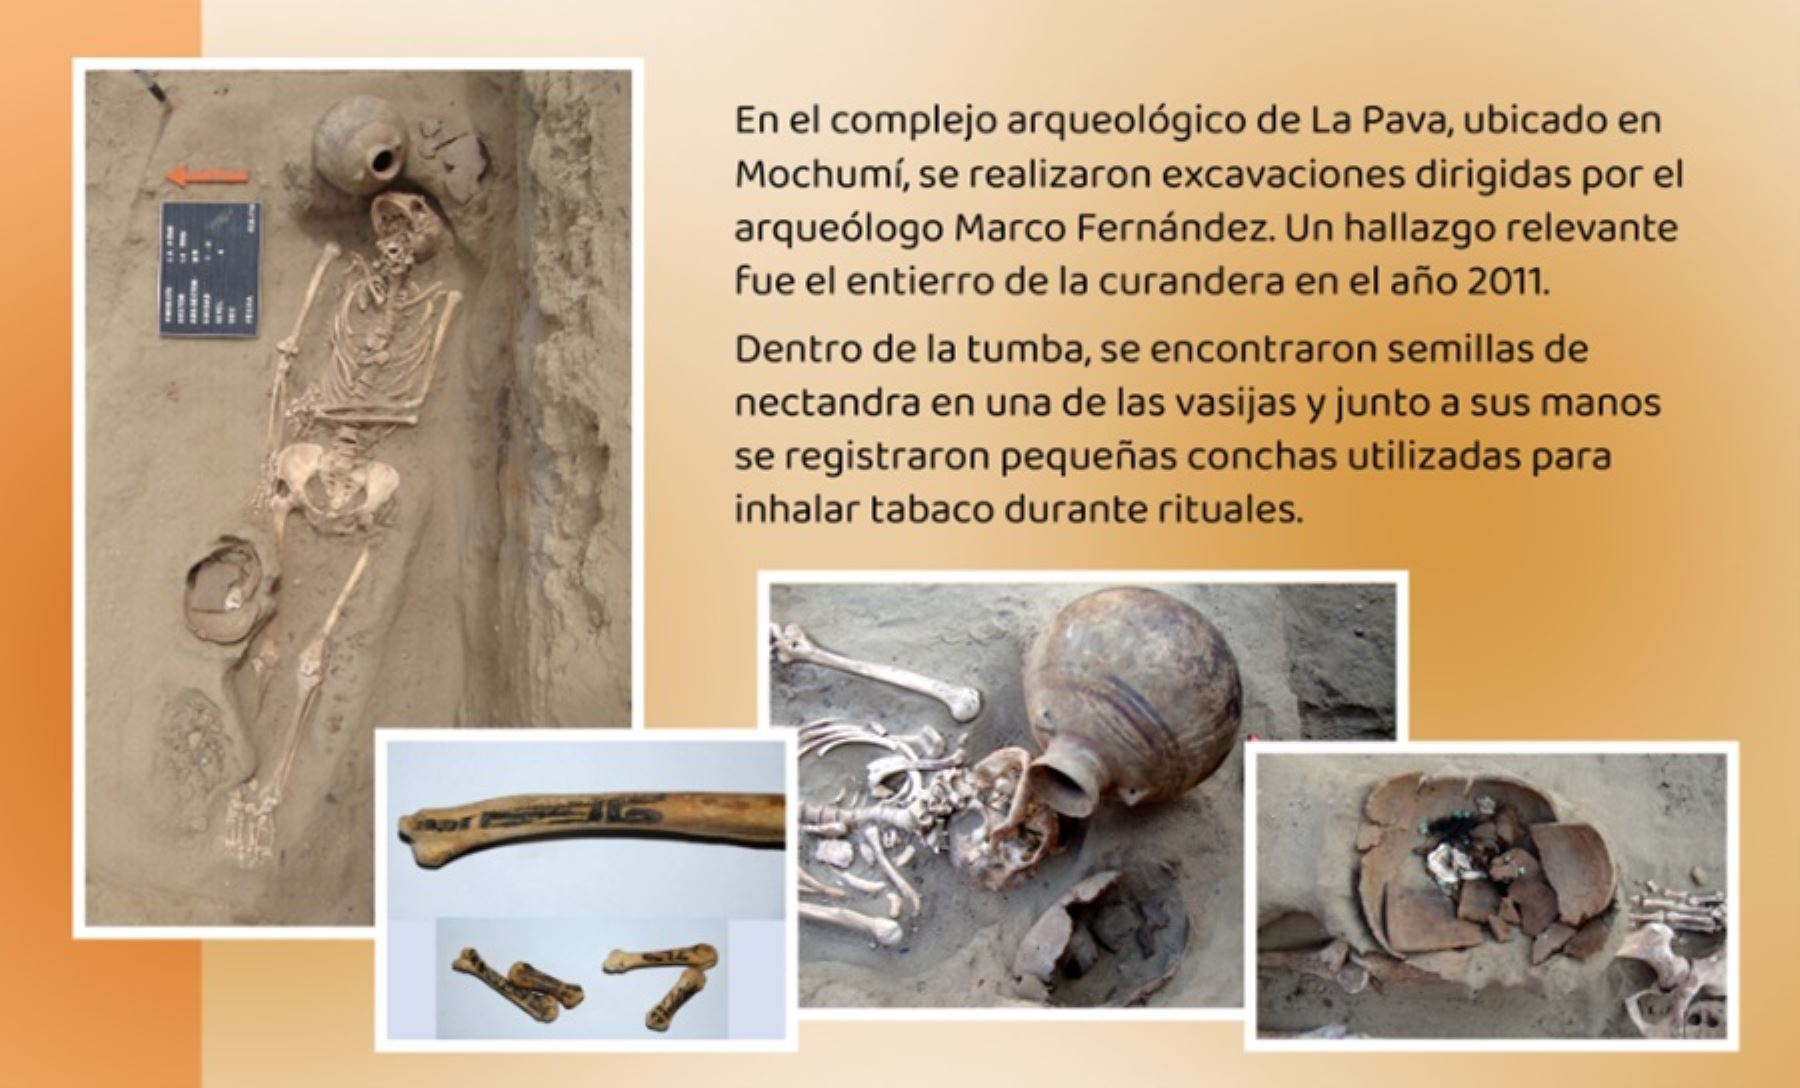 La tumba con el esqueleto de un personaje femenino al que se llamó “La Curandera” fue descubierta en 2011 en el complejo arqueológico La Pava, ubicado en el distrito de Mochumí durante las excavaciones dirigidas por el arqueólogo Marco Fernández.